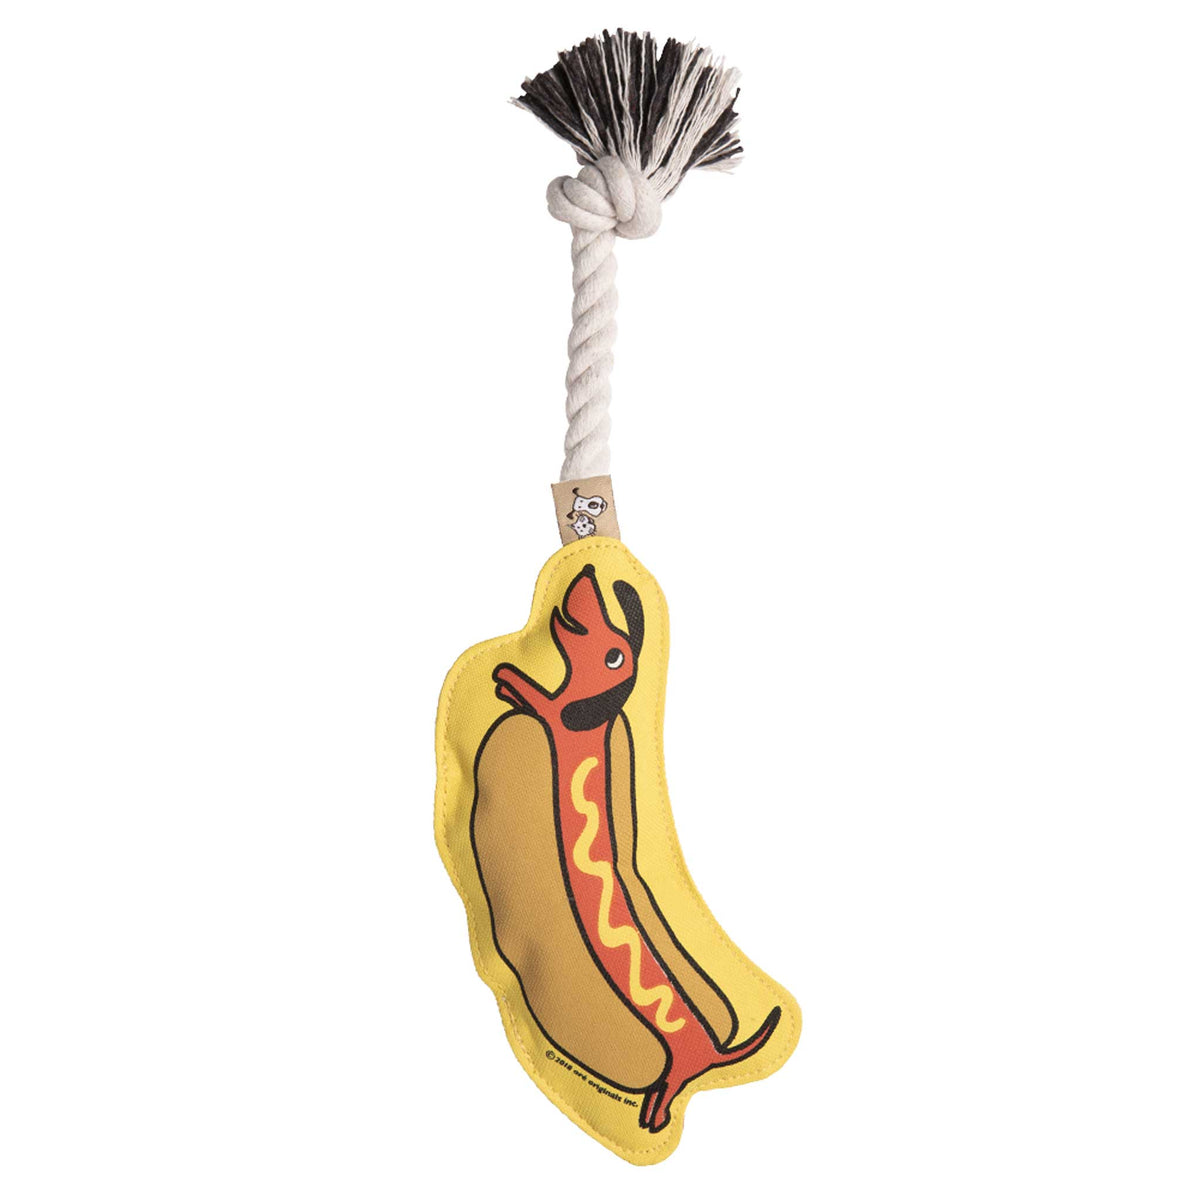 Weiner Hot Dog Dachshund Rope Dog Toy with Squeaker